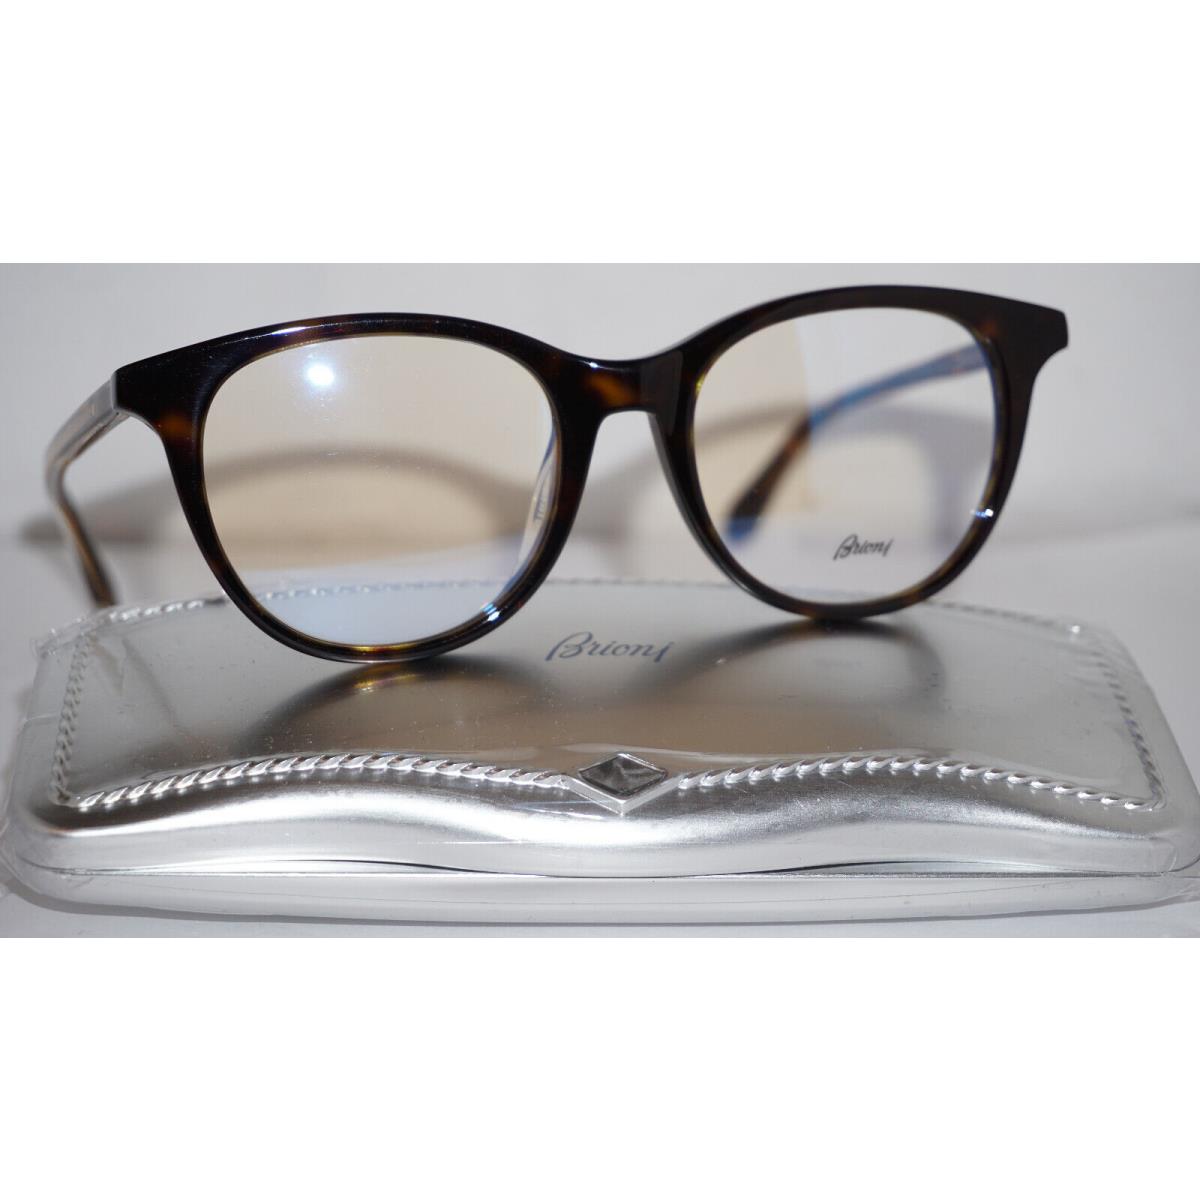 Brioni Eyeglasses RX Havana Transparent BR0032OA 002 51 19 150